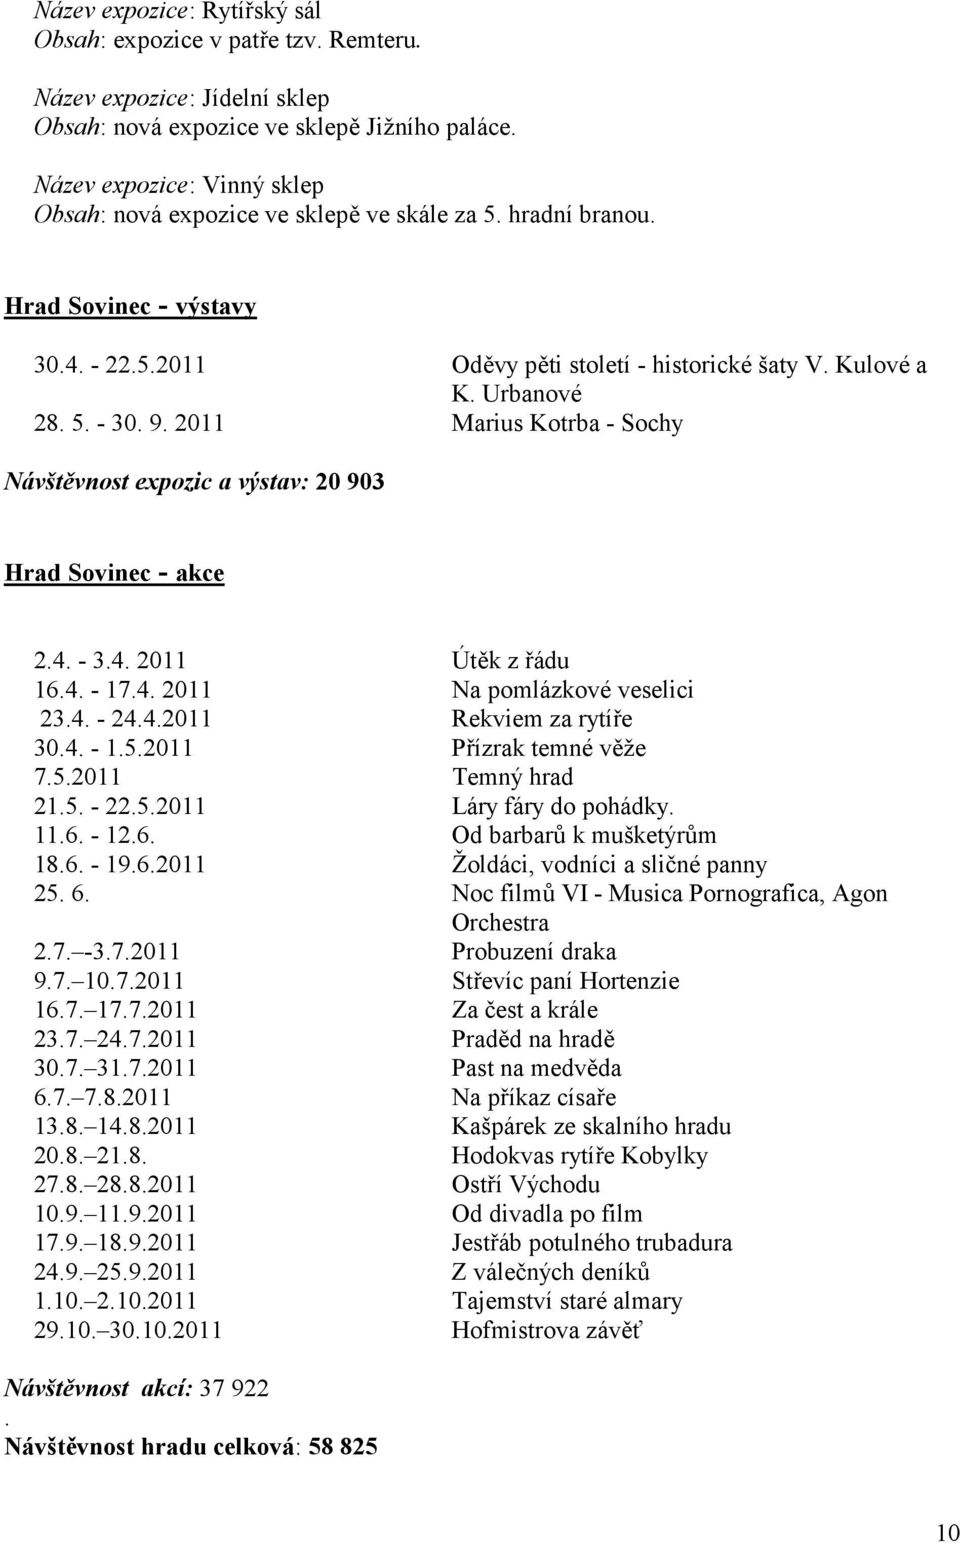 9. 2011 Marius Kotrba - Sochy Návštvnost expozic a výstav: 20 903 Hrad Sovinec - akce 2.4. - 3.4. 2011 Útk z ádu 16.4. - 17.4. 2011 Na pomlázkové veselici 23.4. - 24.4.2011 Rekviem za rytíe 30.4. - 1.5.